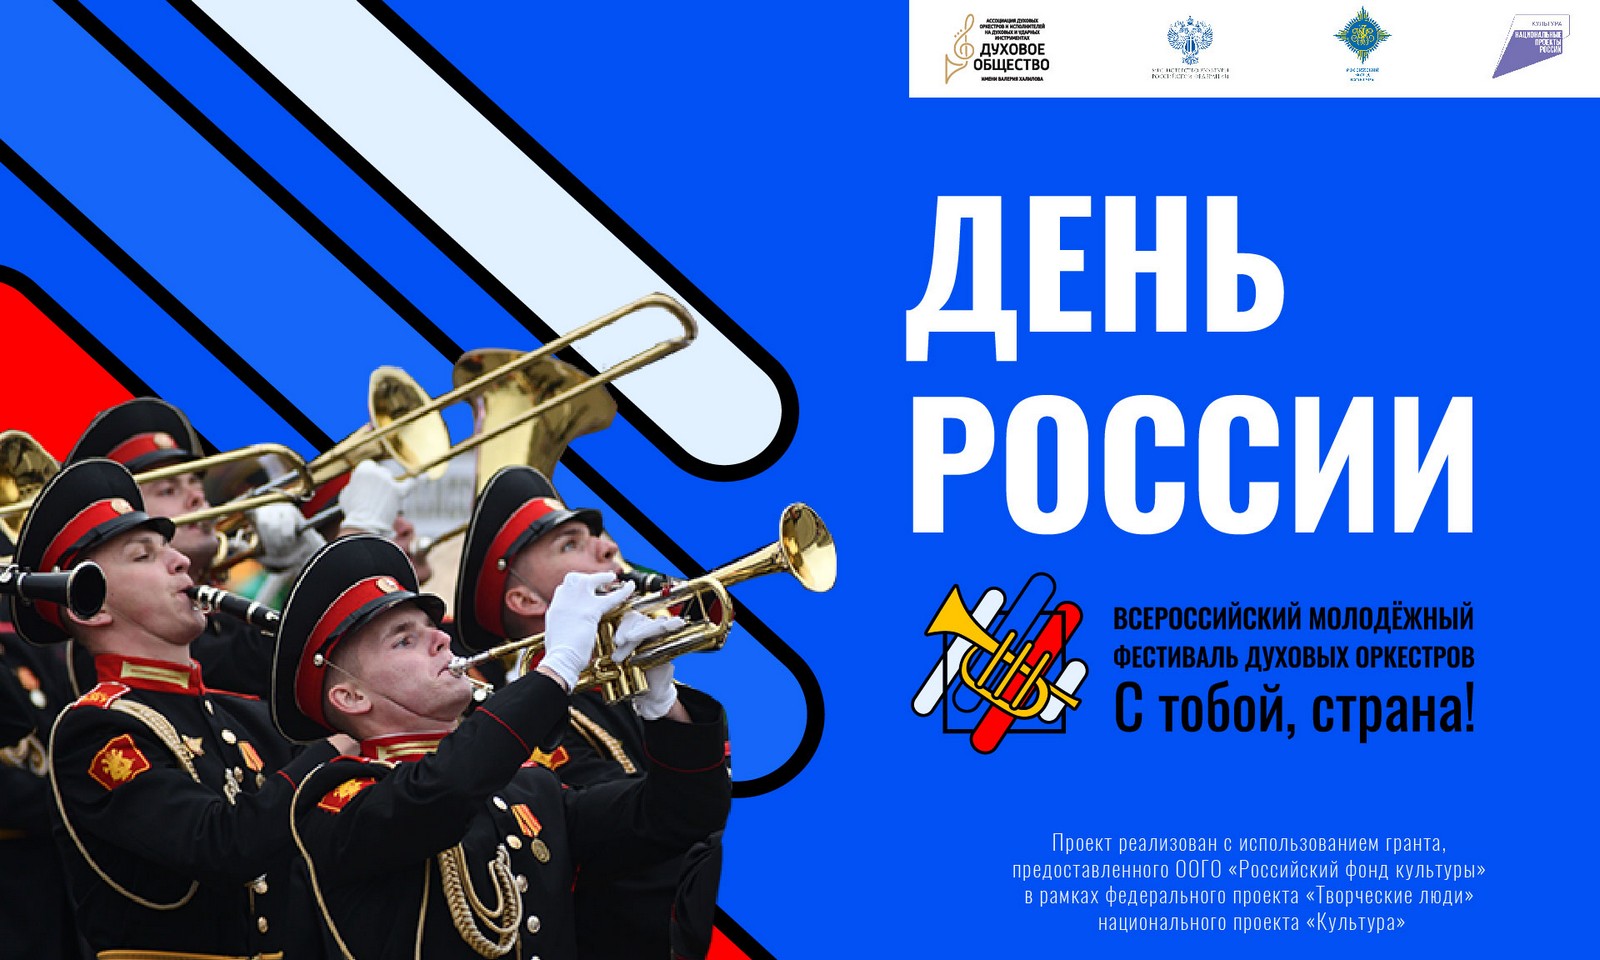 «С тобой, страна!»: День России в Москве отметят масштабным фестивалем духовых оркестров